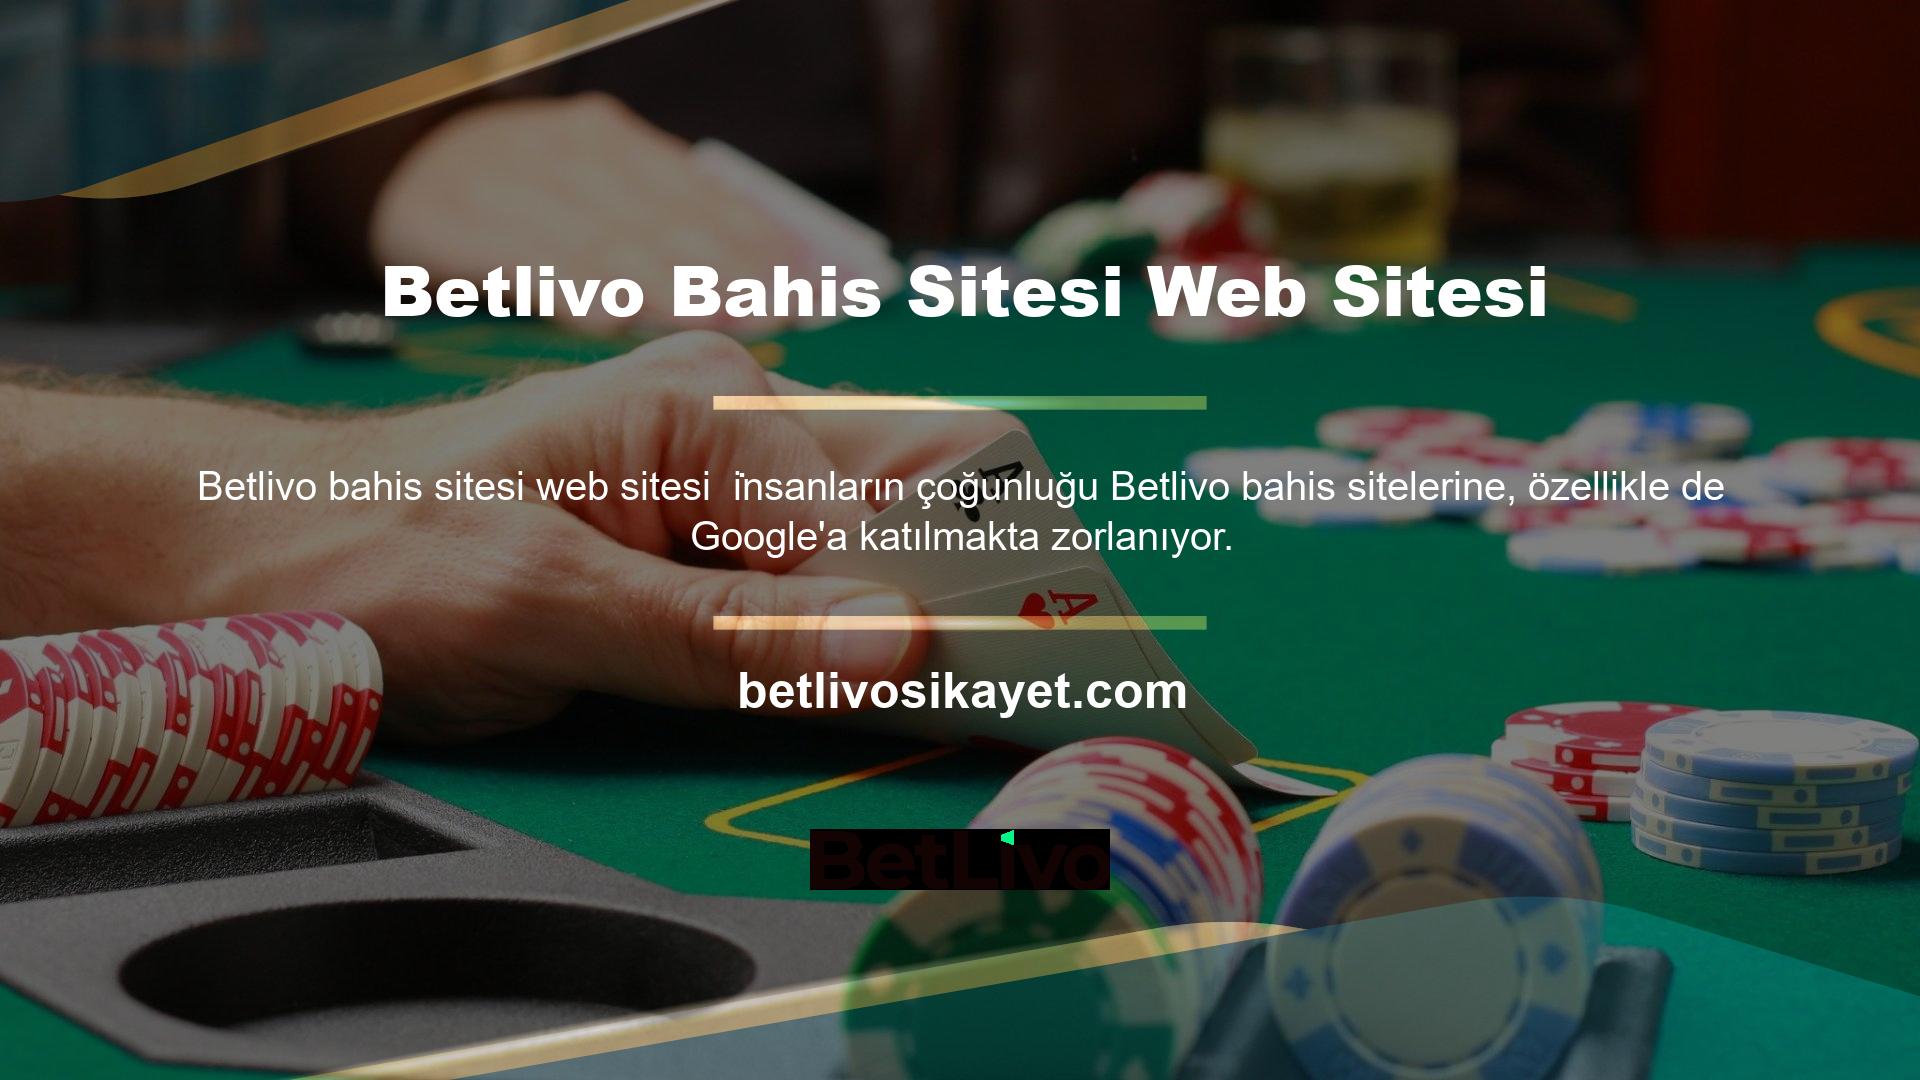 Bahis sitelerine göz atarken, Betlivo casino sitesi web sitesine erişen bireysel hesaplarla karşılaşmak yaygındır